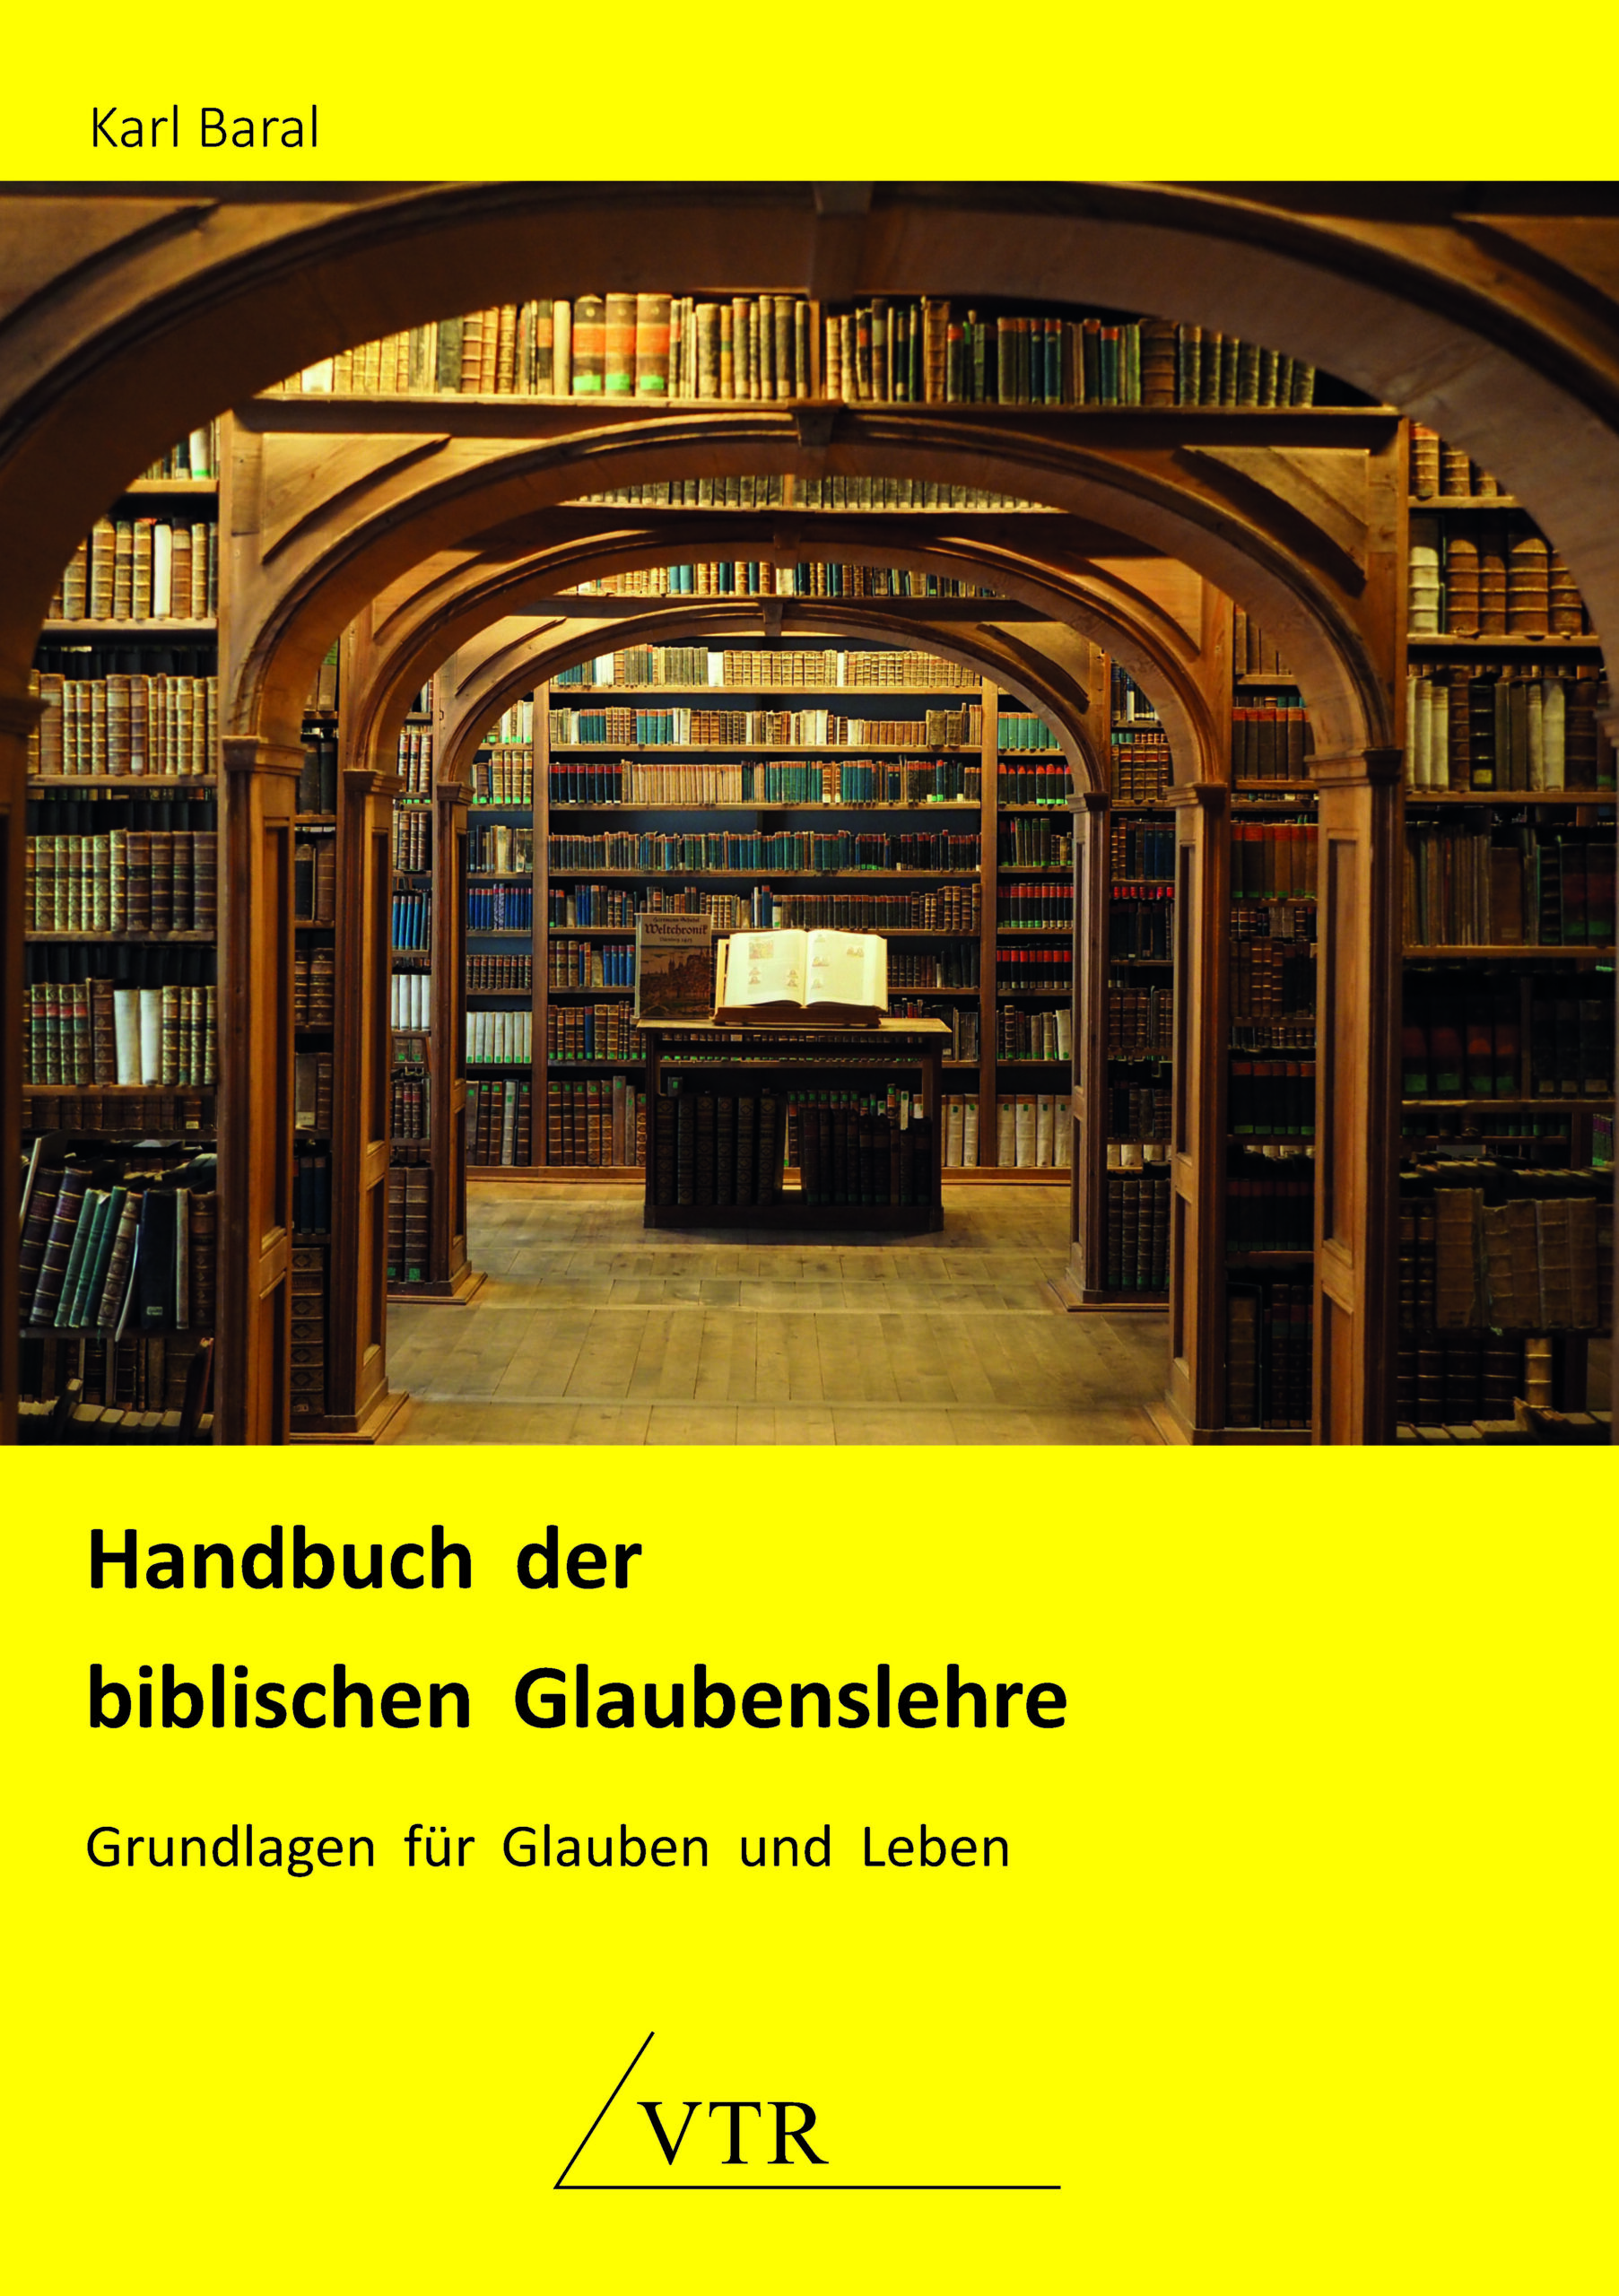 Karl Baral: “Handbuch der biblischen Glaubenslehre – Grundlagen für Glauben und Leben” – 5. Auflage